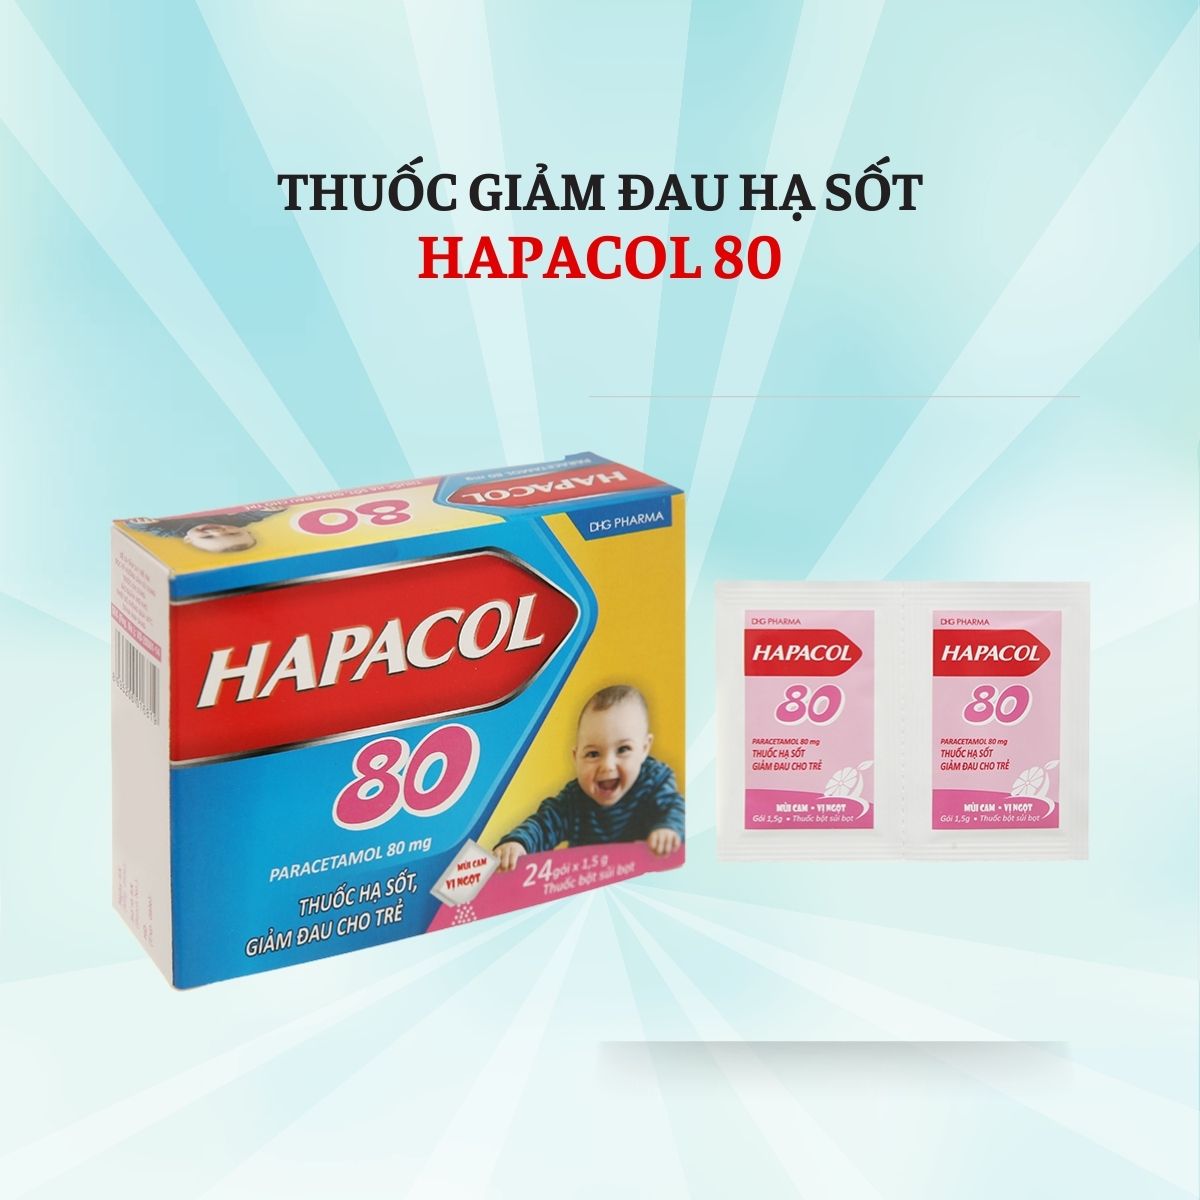 Hapacol-80 có tác dụng gì?